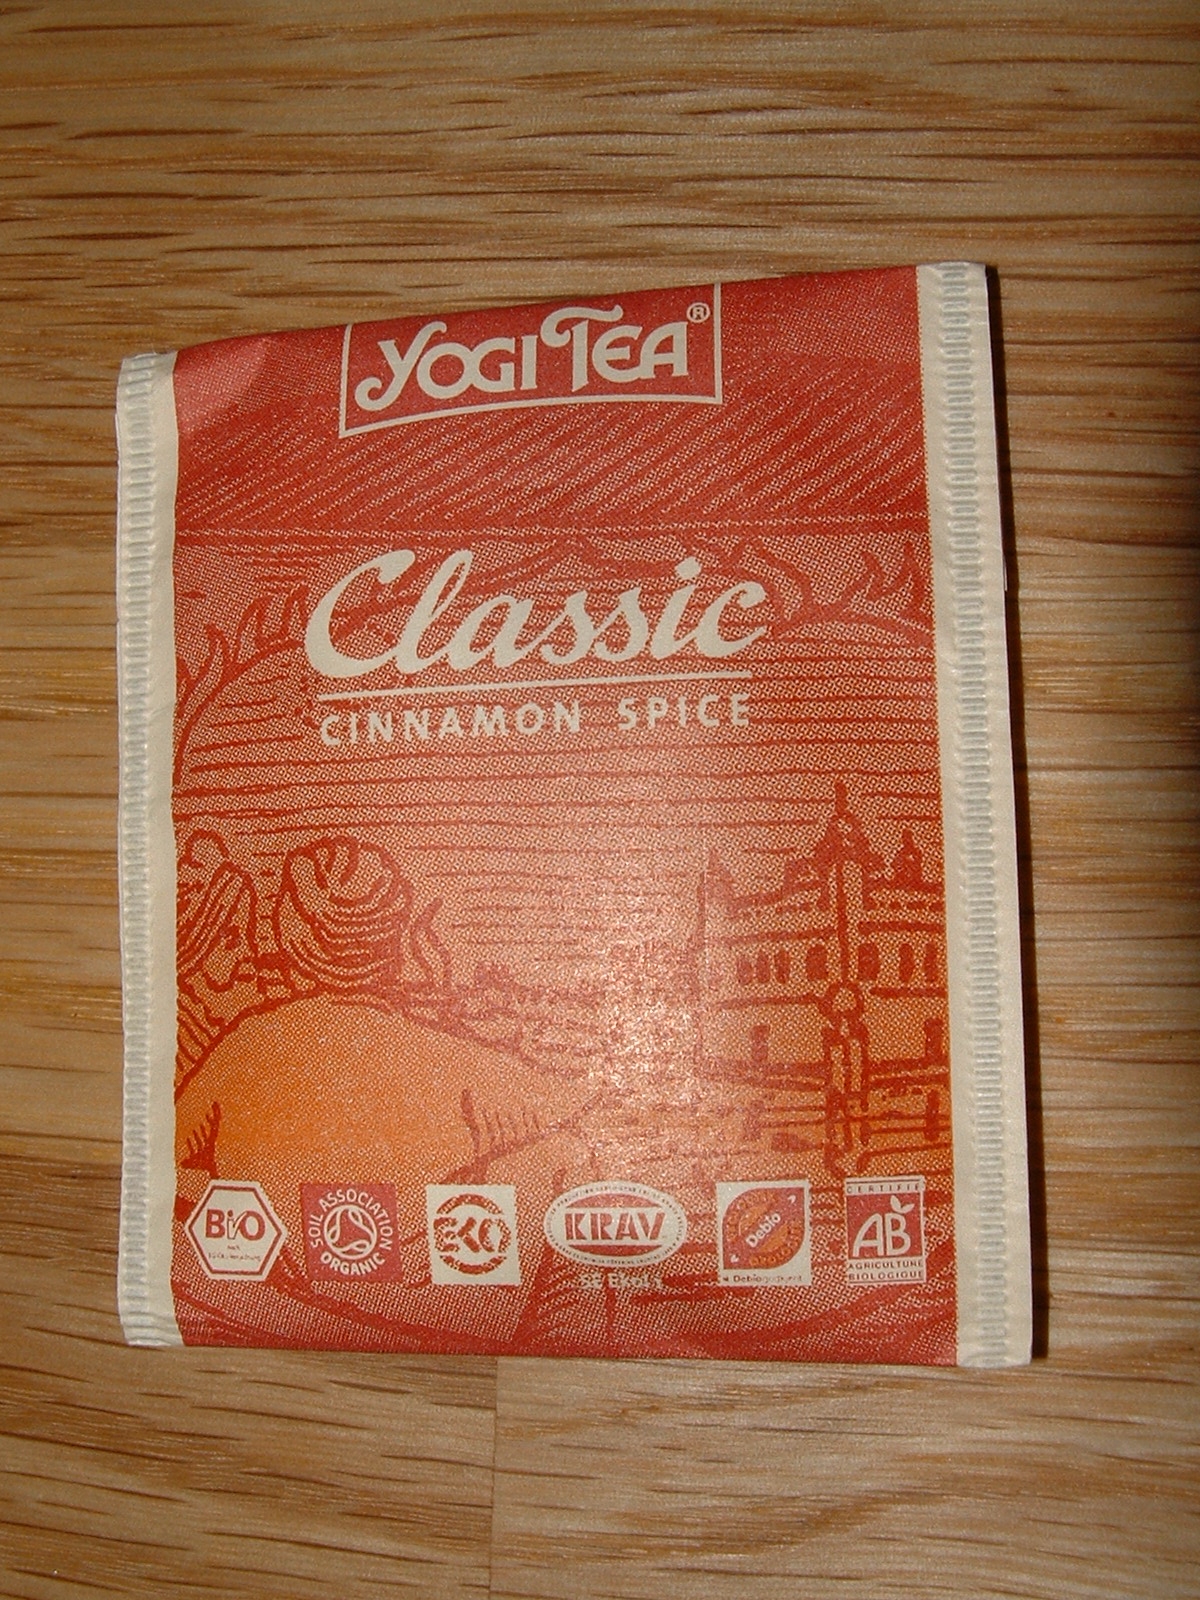 Yogi Tee einzeln verpackter Aufgußbeutel

Ommmmmmmmmmm